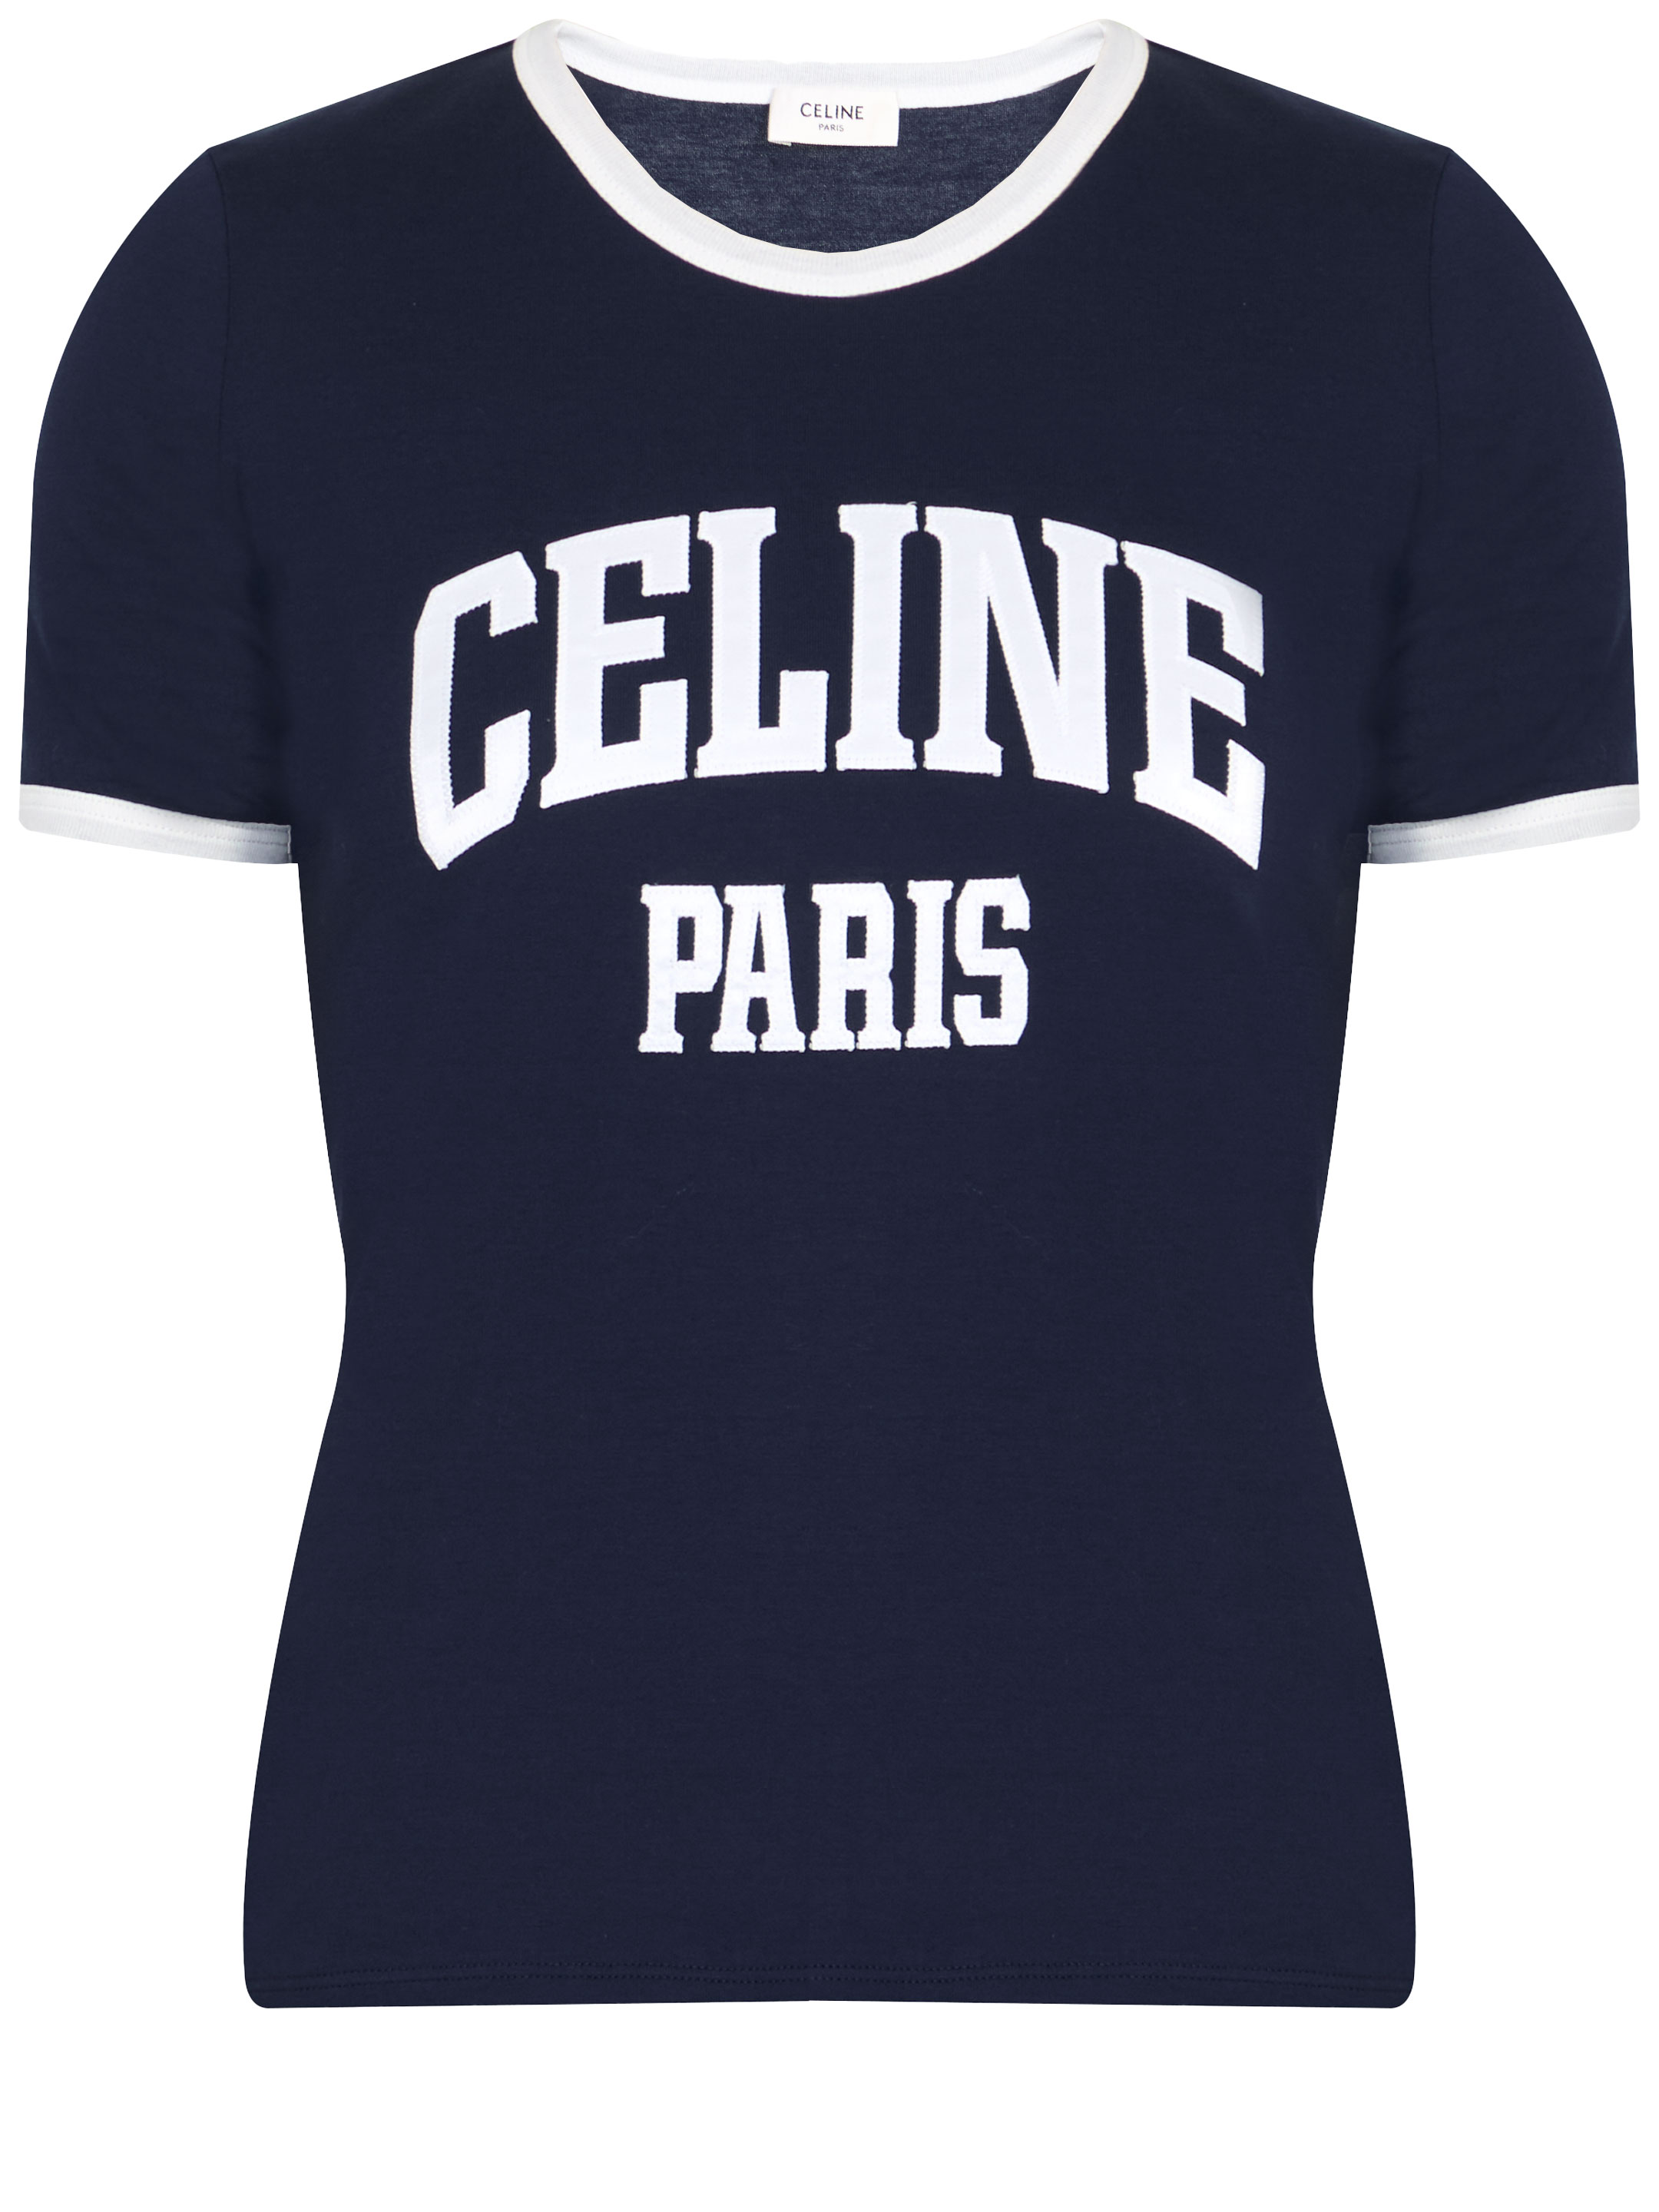 Celine Paris Tshirt In Blue